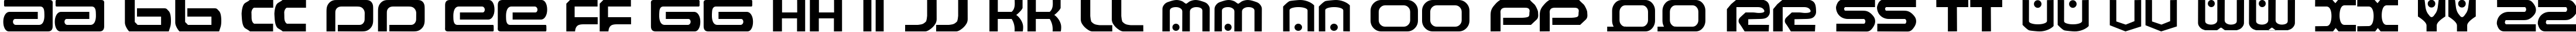 Пример написания английского алфавита шрифтом Raveflire